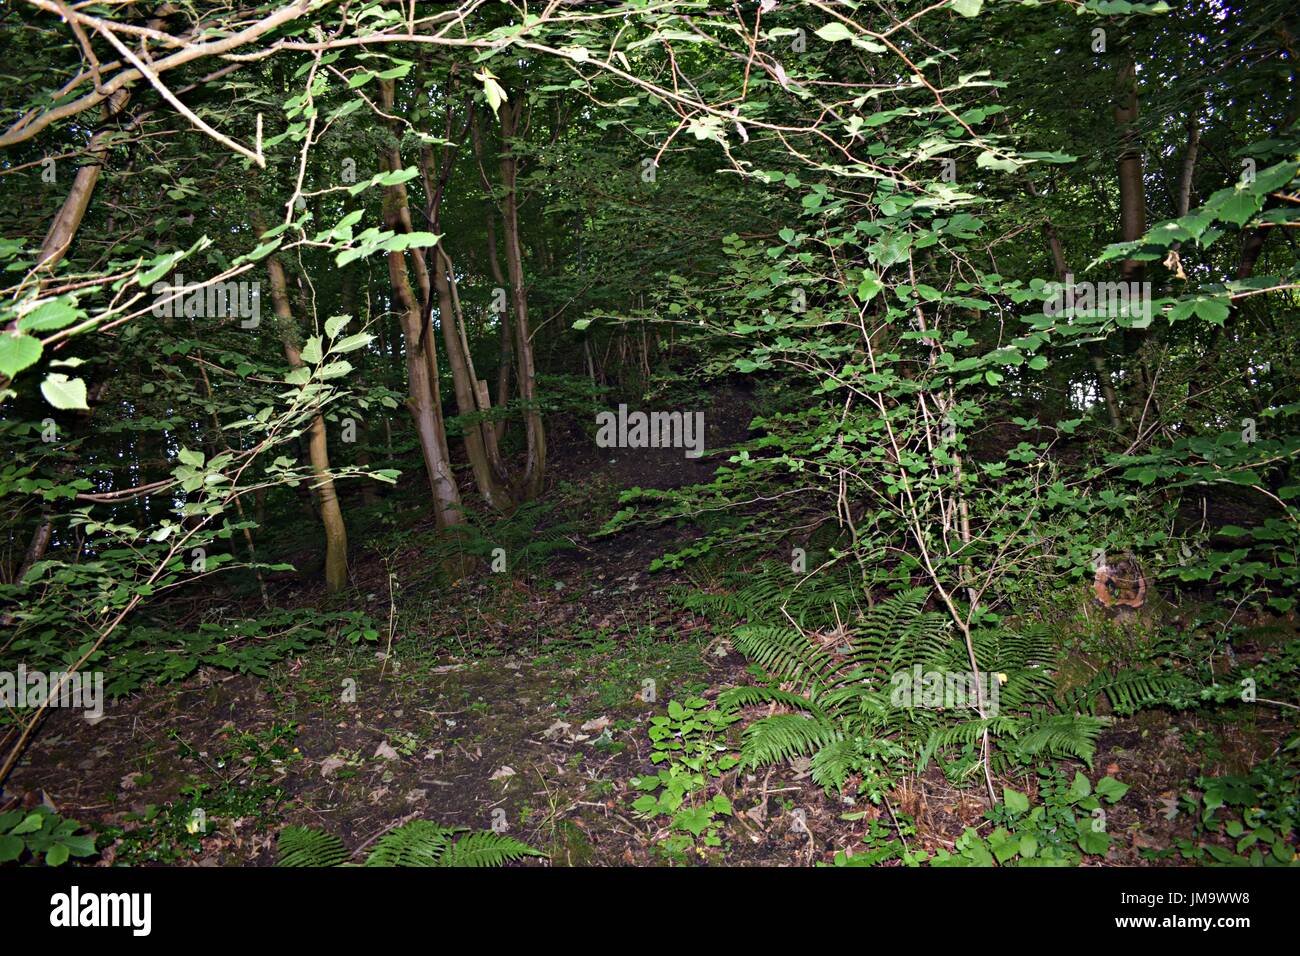 Zufallsbilder der Natur im Wald Stockfoto